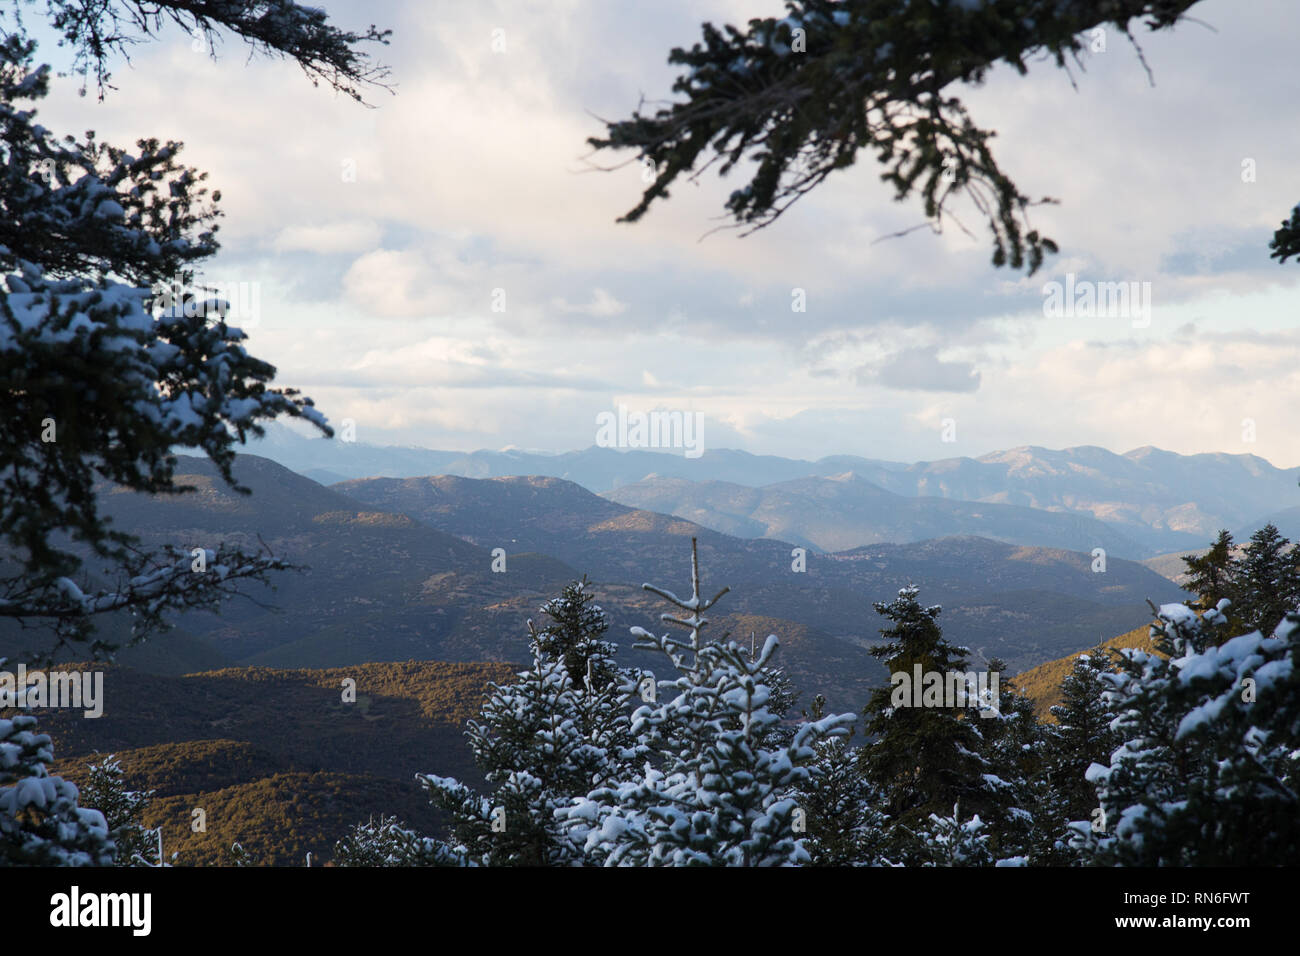 Paysage montagneux en Grèce pendant la saison d'hiver, avec les nuages et rayons de soleil les pics d'éclairage. Un cadre de sapins enneigés est au premier plan. Banque D'Images